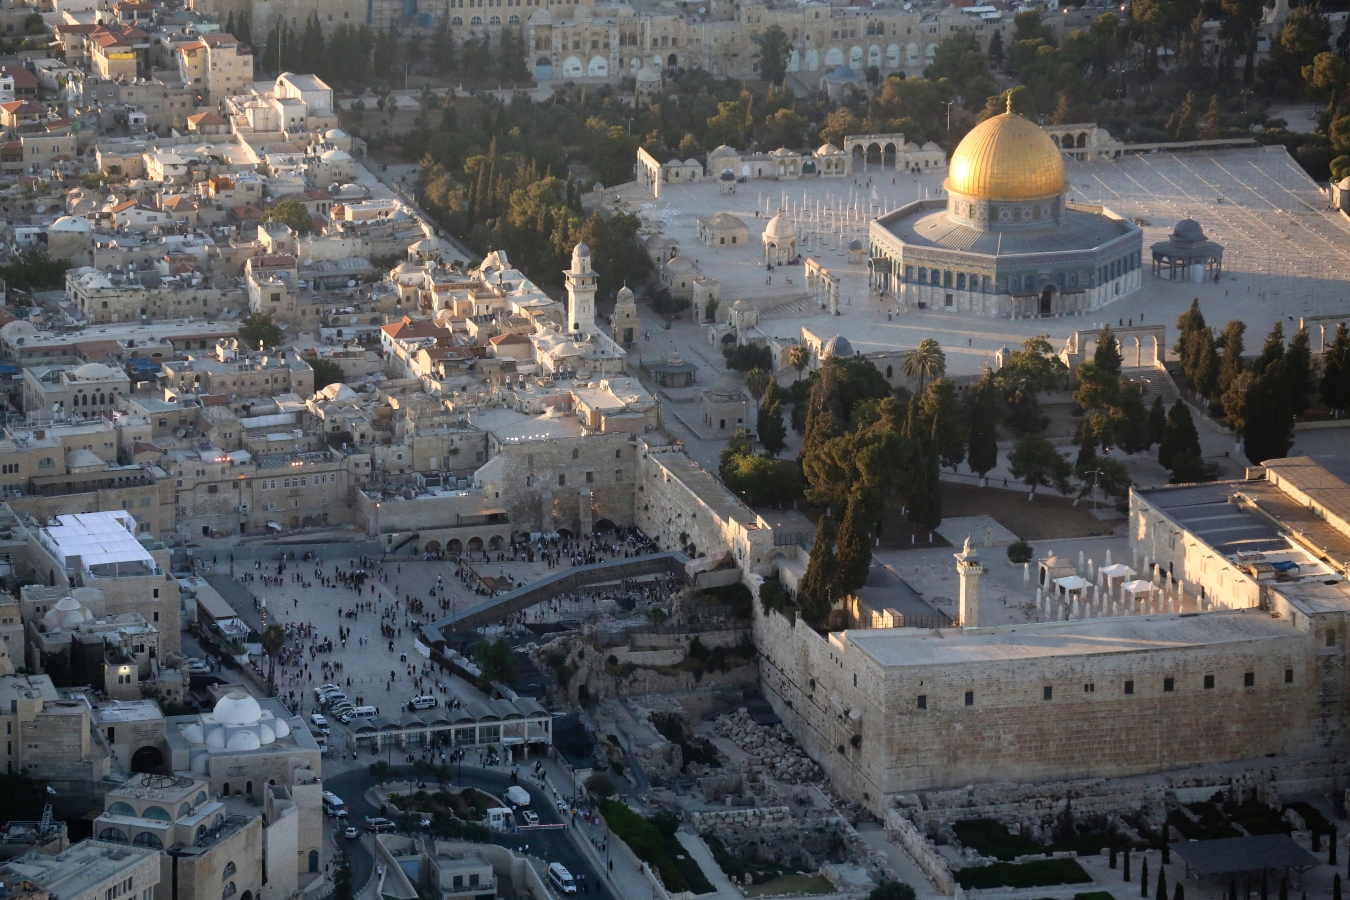 Jerozolima Wschód Zachód Izrael Tours